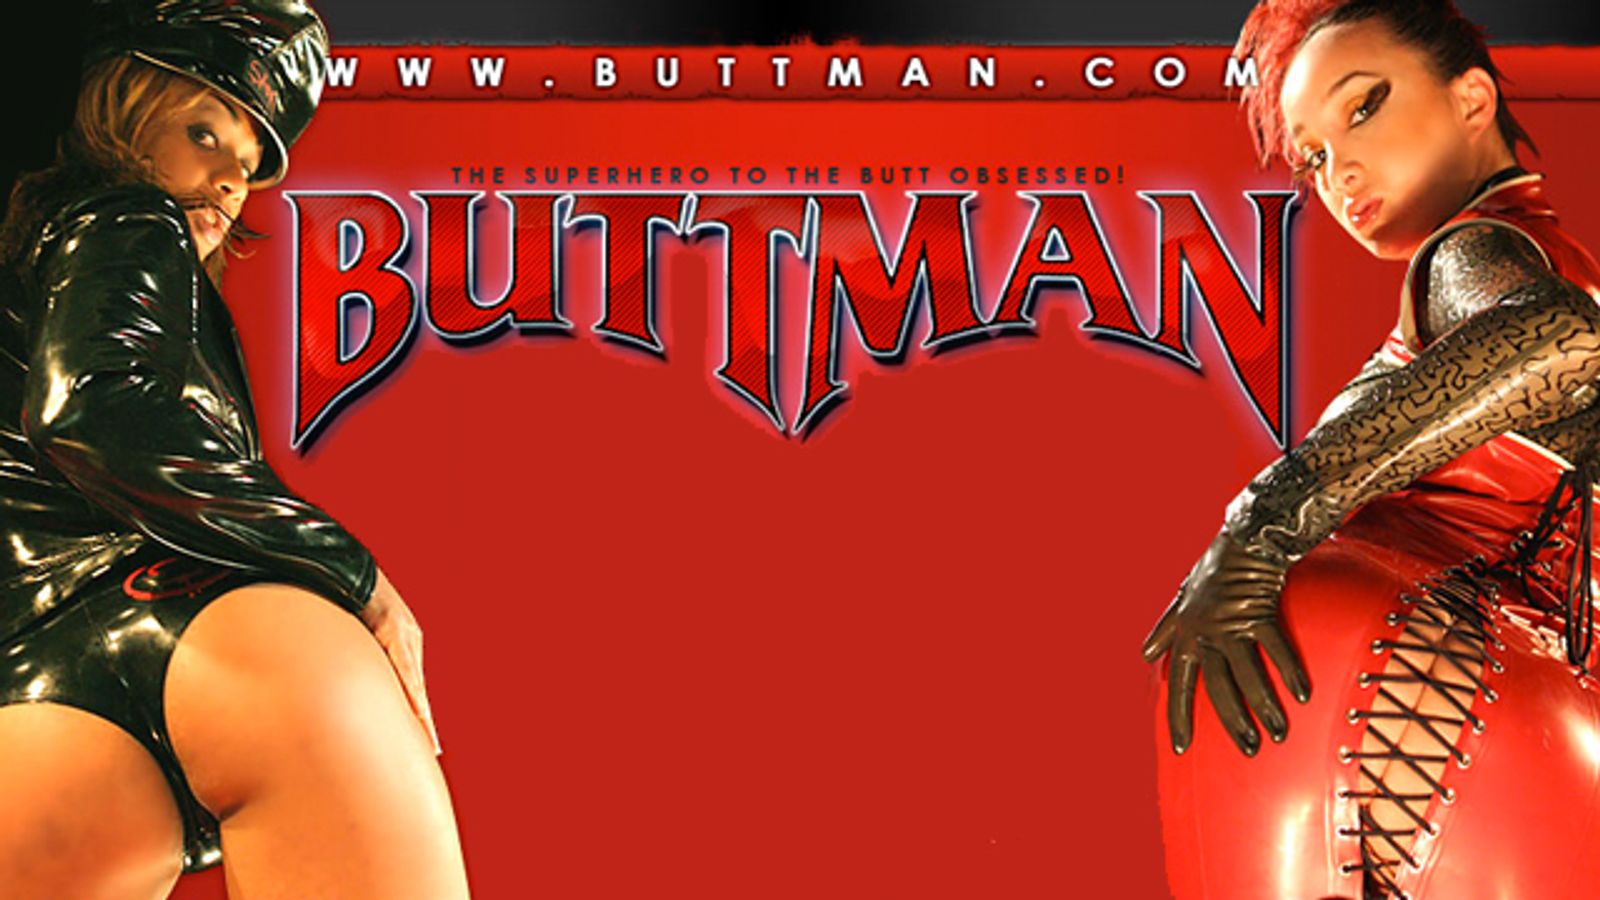 Buttman.com Adds 4 New Directors’ Content